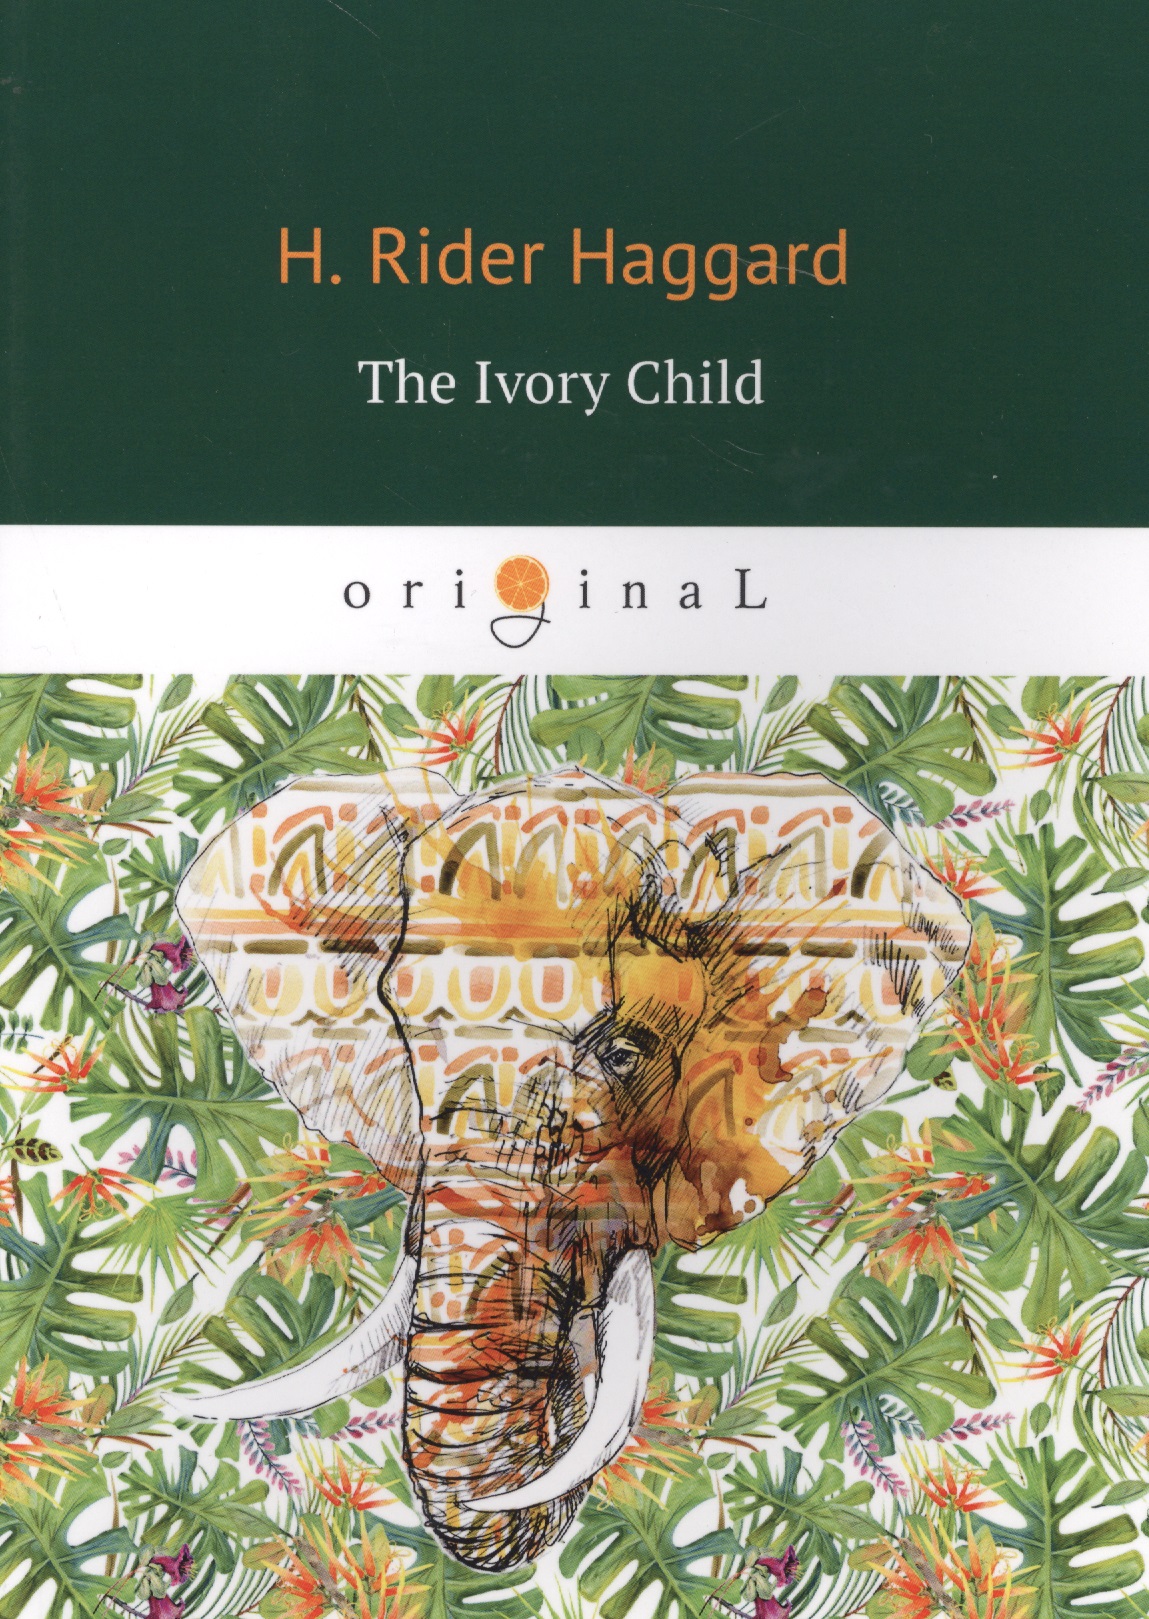 Хаггард Генри Райдер The Ivory Child = Дитя слоновой кости: на английском языке хаггард генри райдер ayesha the return of she айеша возвращение на английском языке